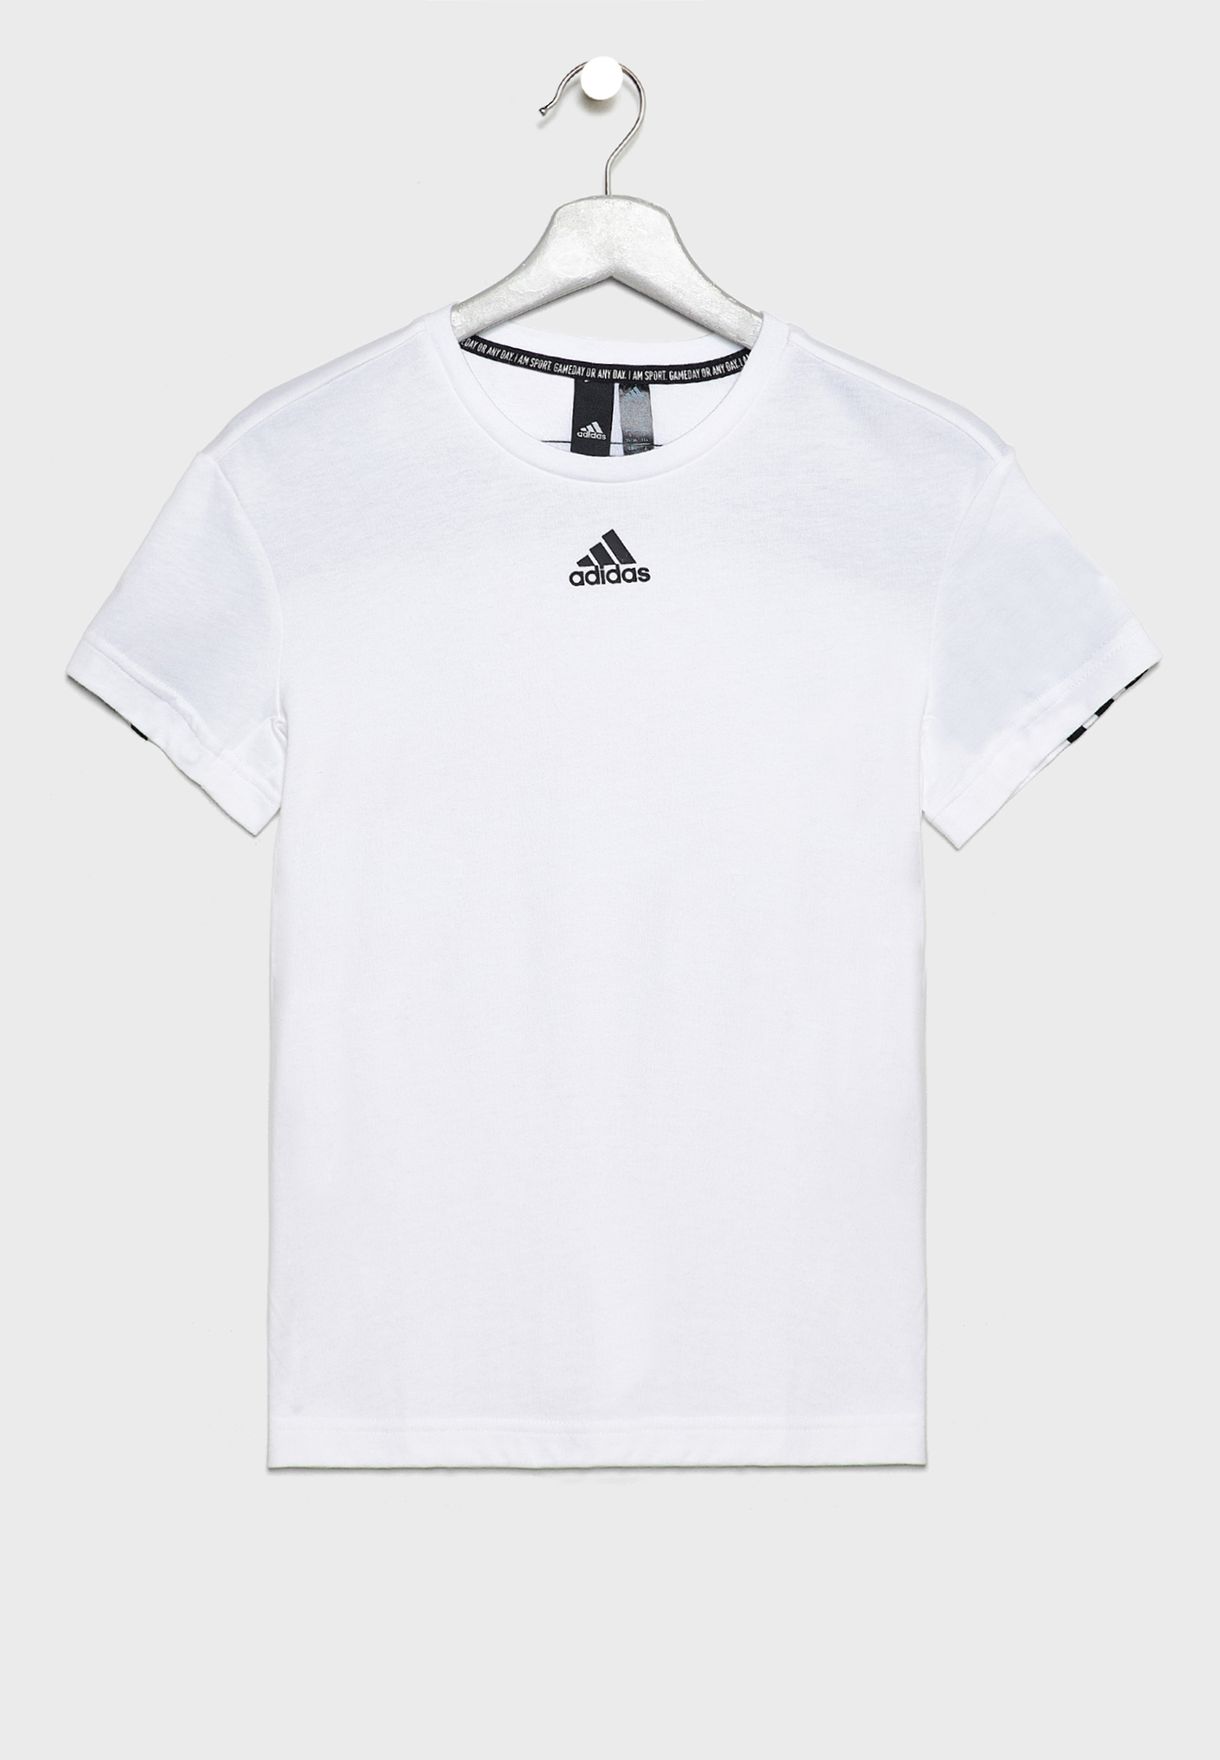 adidas white full sleeve t shirts